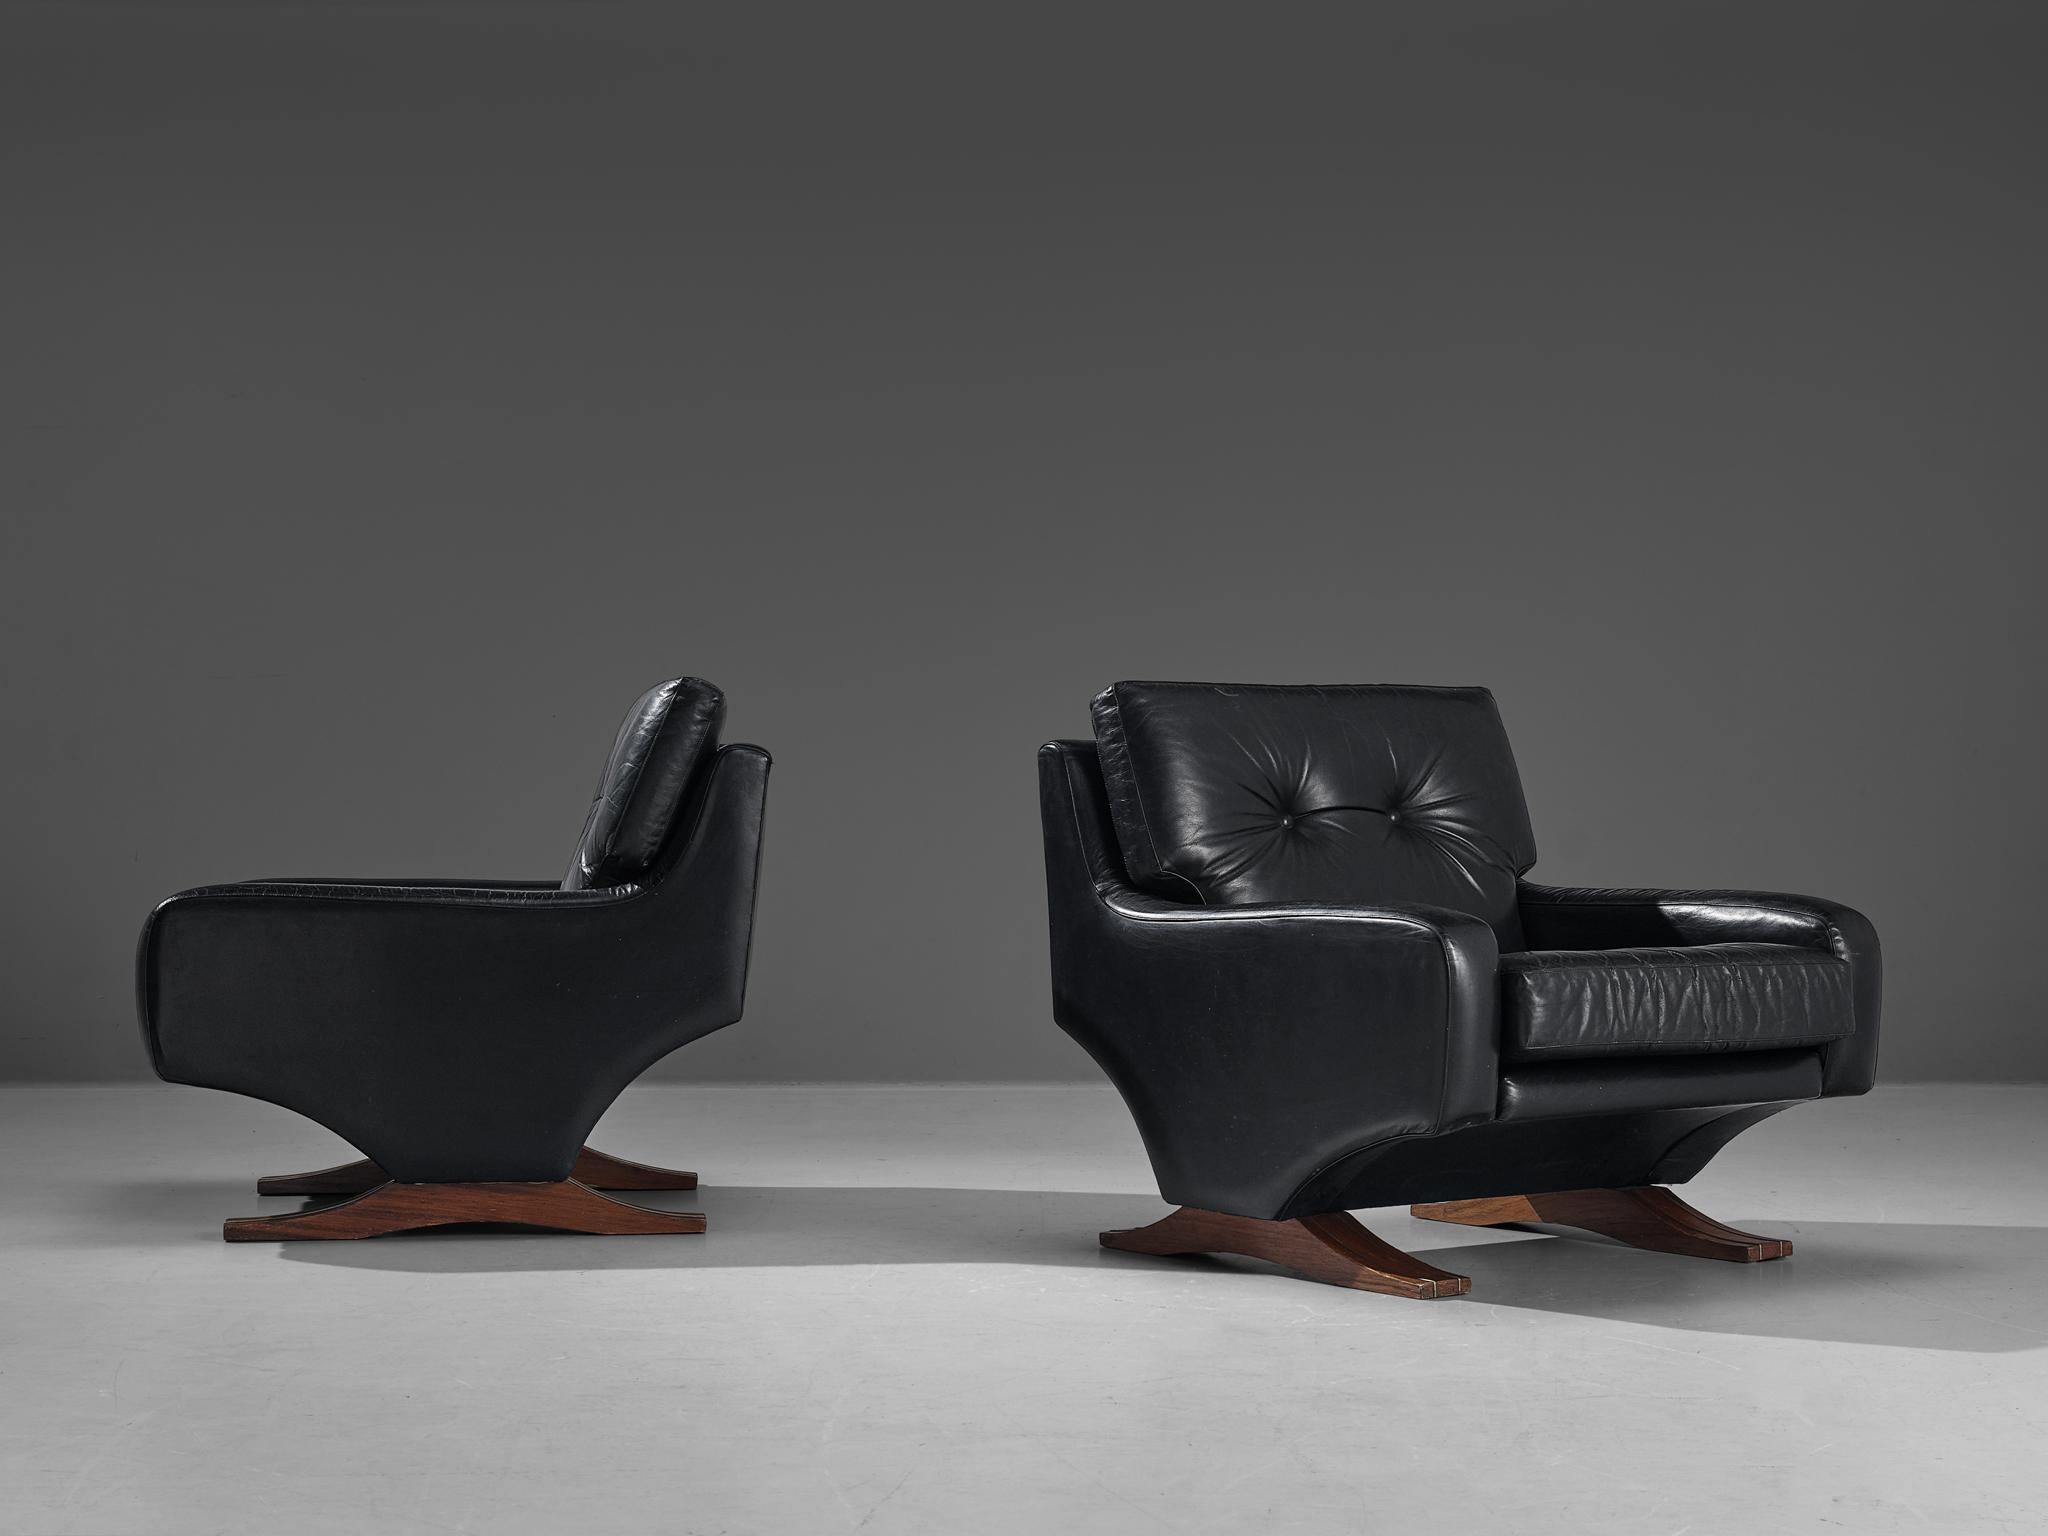 Franz Sartori pour Flexform, paire de chaises longues, cuir, bois teinté, Italie, vers 1965.

Solide paire de chaises longues en cuir noir du sculpteur italien Franz Sartori. Ces chaises présentent un design moderne grâce à leurs lignes droites. Les